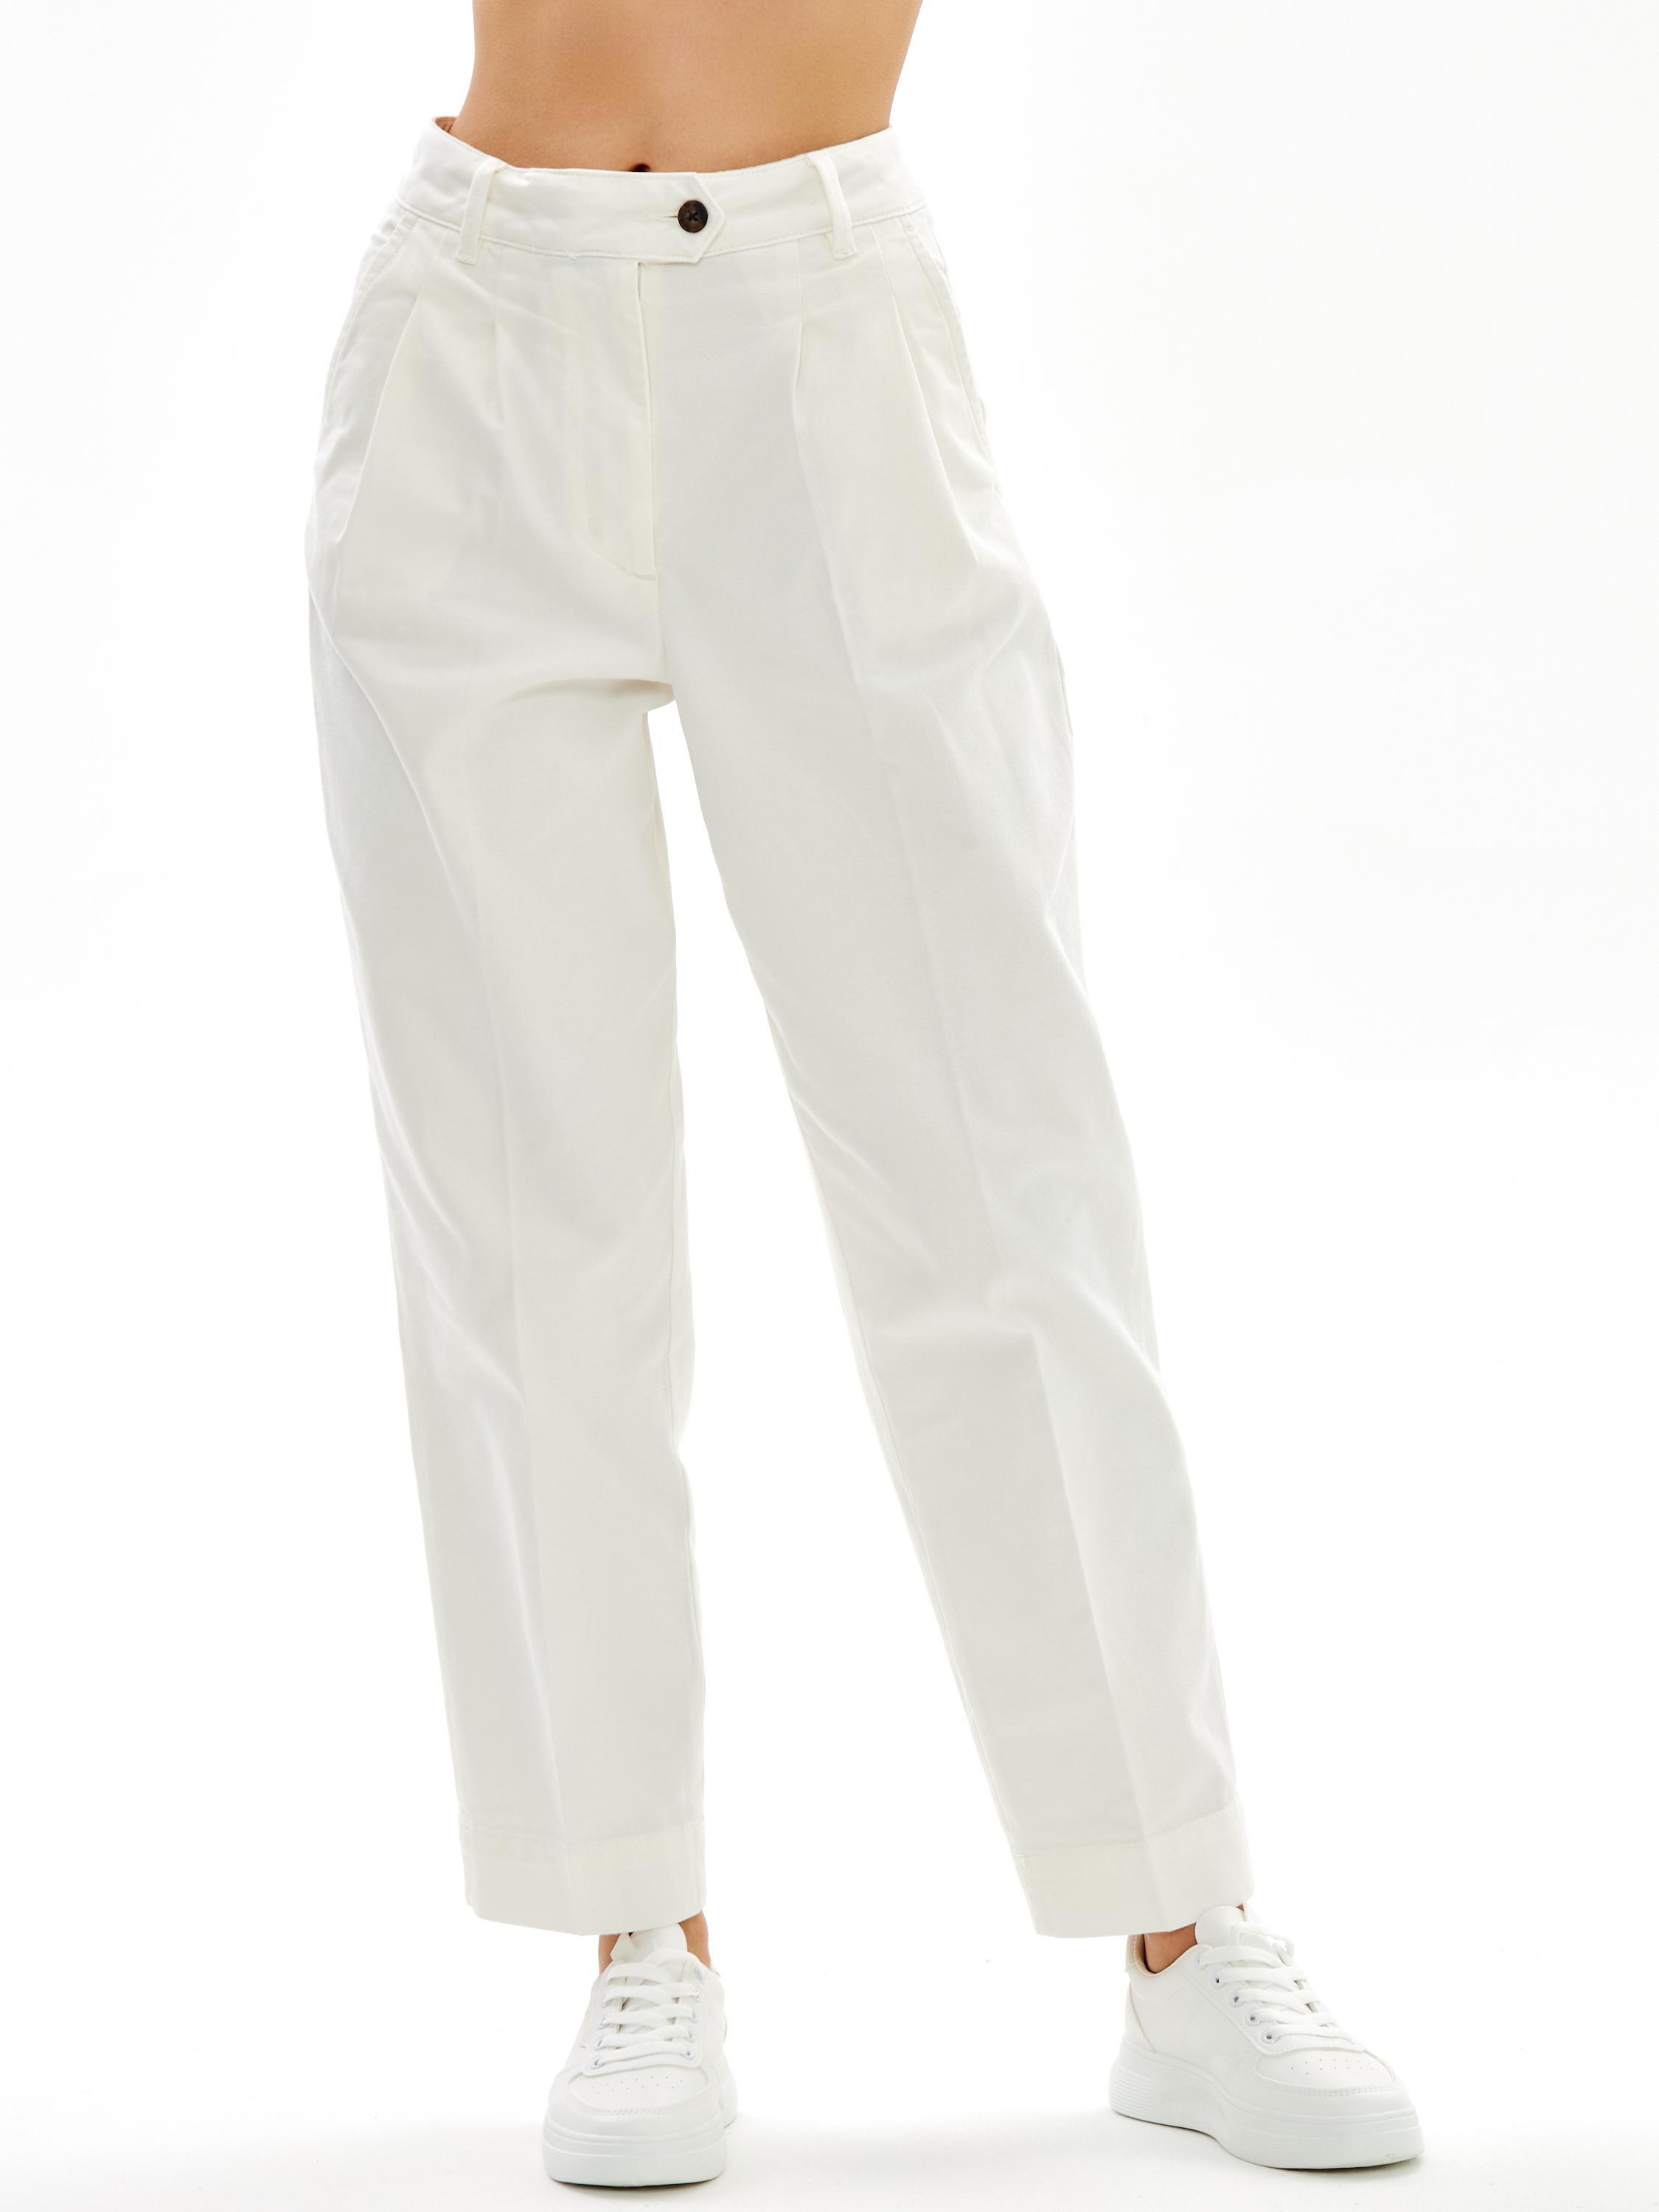 Женские брюки чинос Gant, белые, цвет белый, размер 38 - фото 3